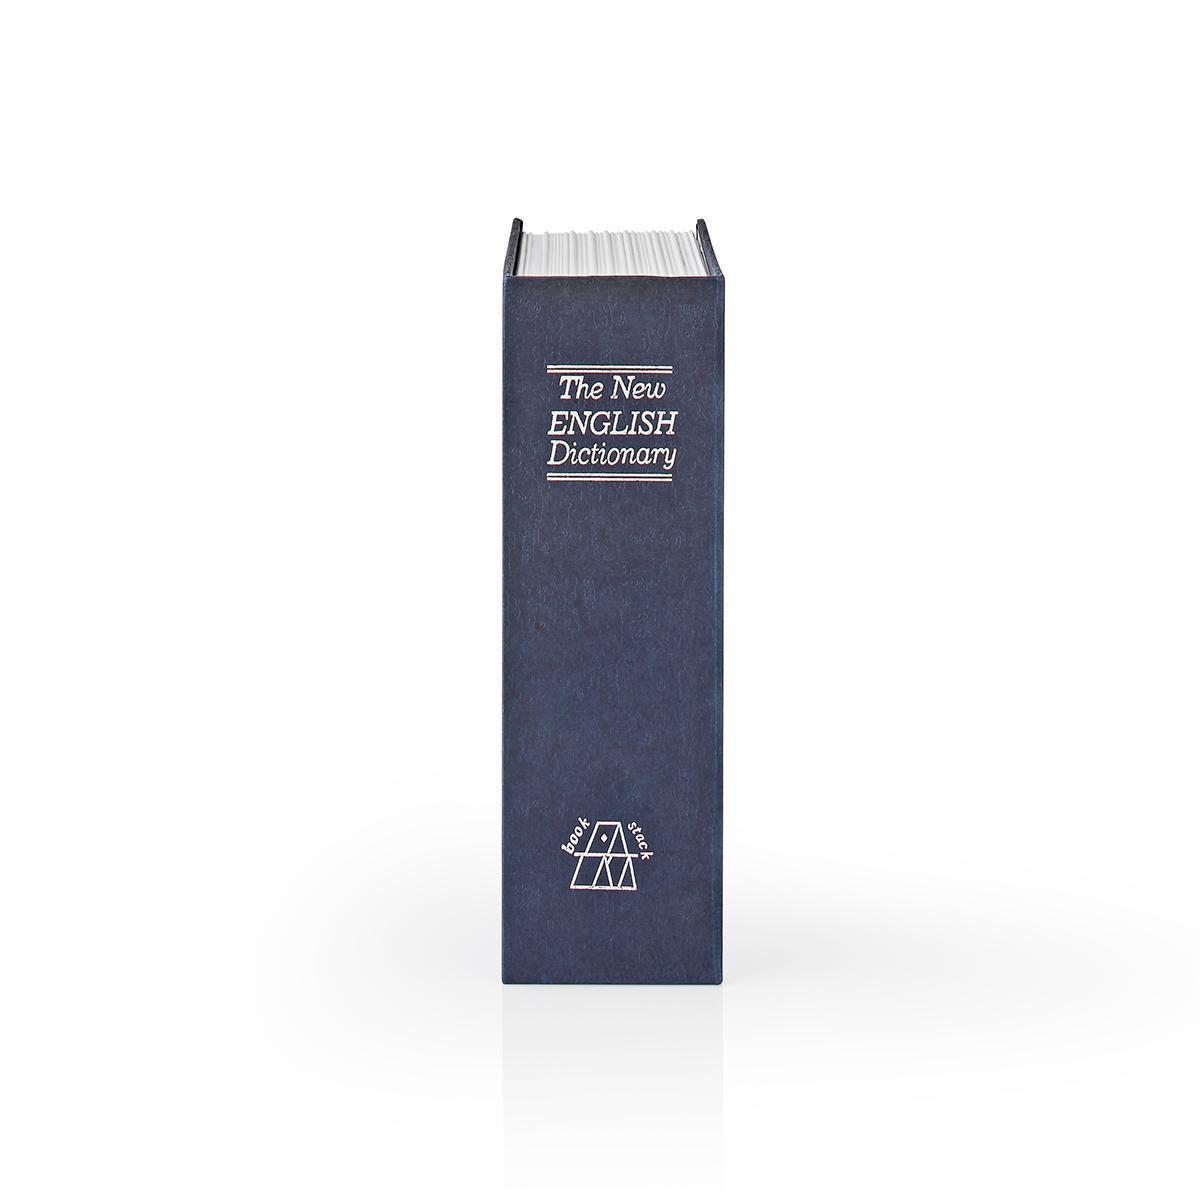 Nedis Coffre-fort | Coffre à livres | Trou de serrure | Intérieur | Petit | Volume intérieur : 0,86 l | 2 clés incluses | Bleu / Argent.  